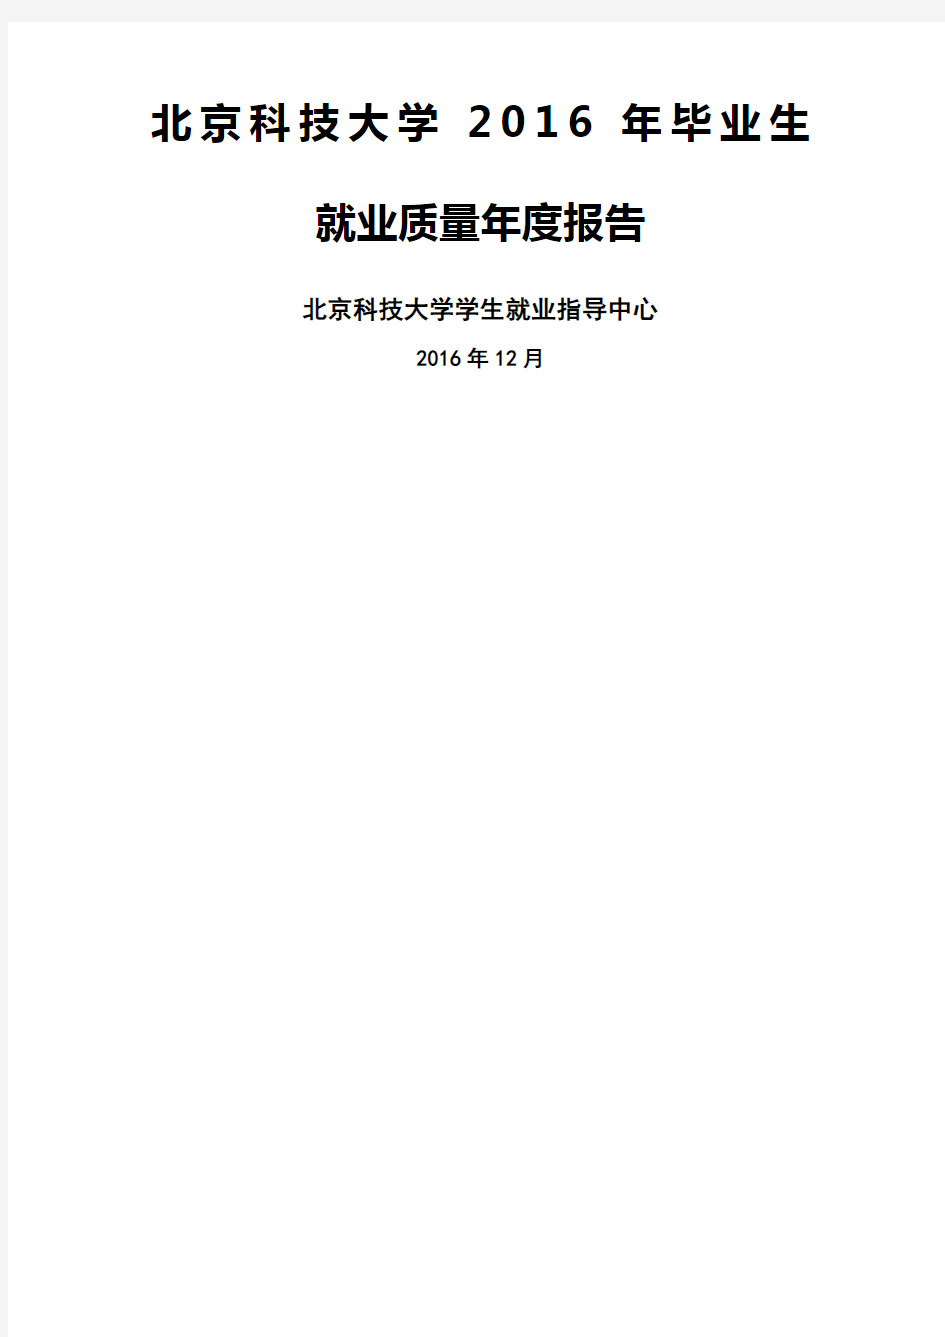 北京科技大学毕业生就业质量度报告